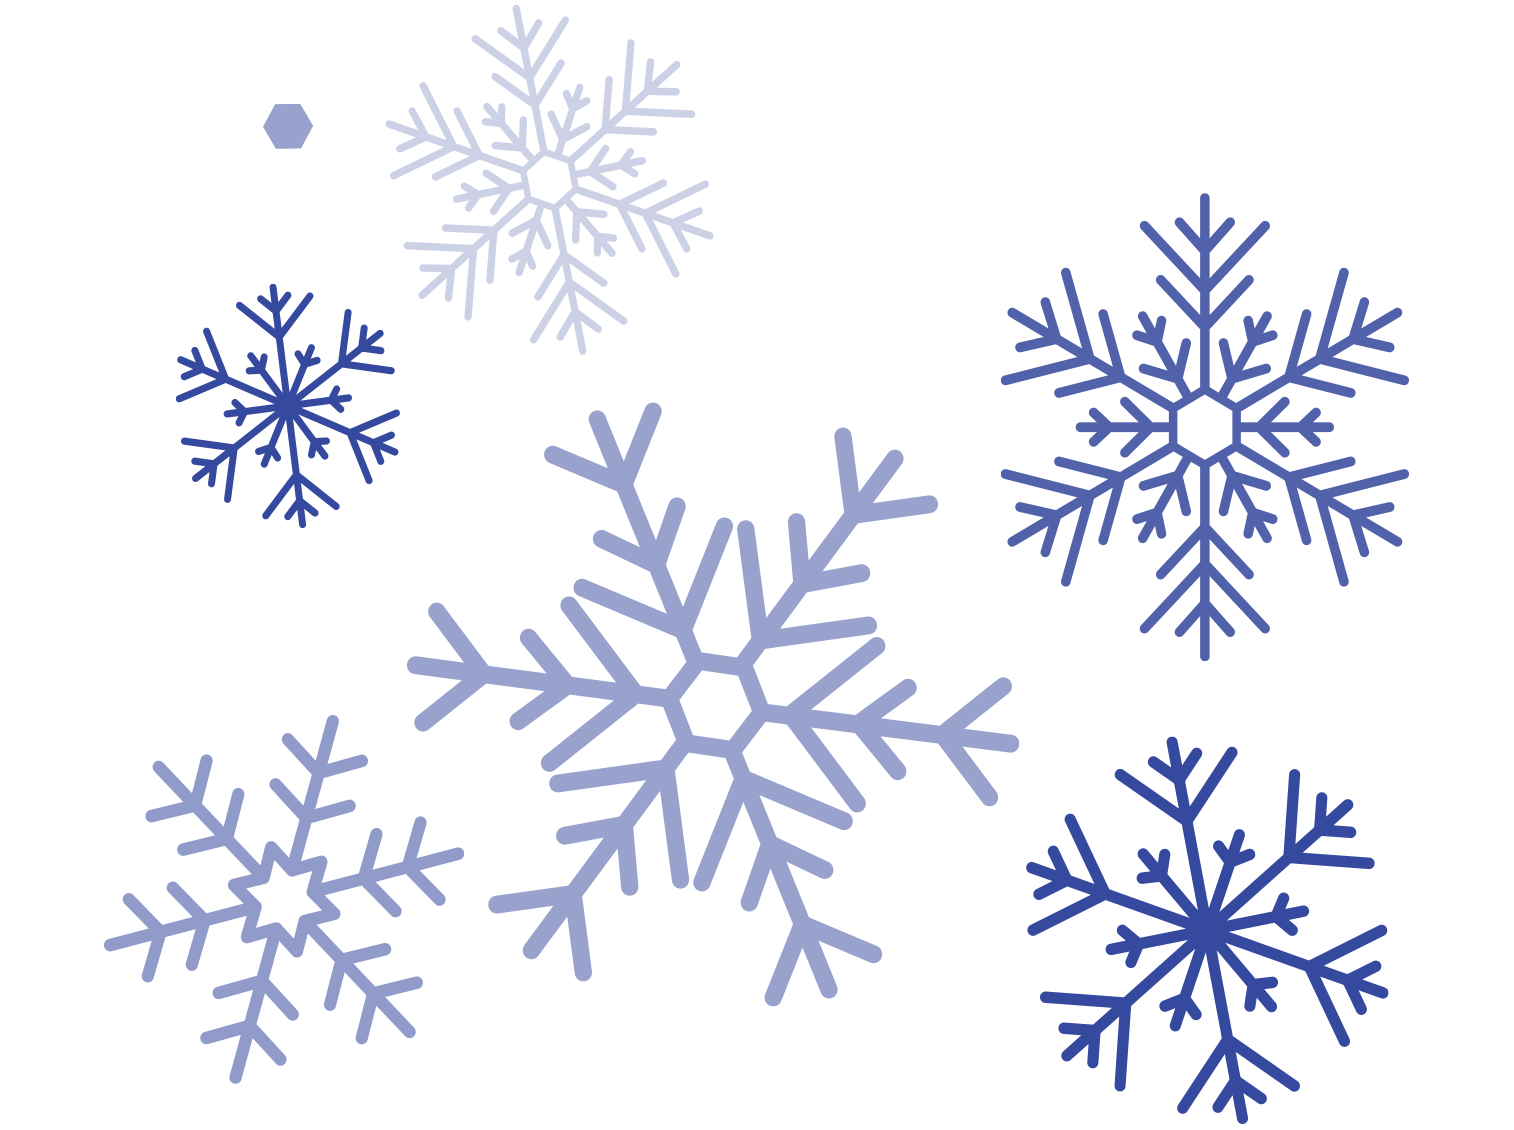 Schneeschaufel – Wikipedia